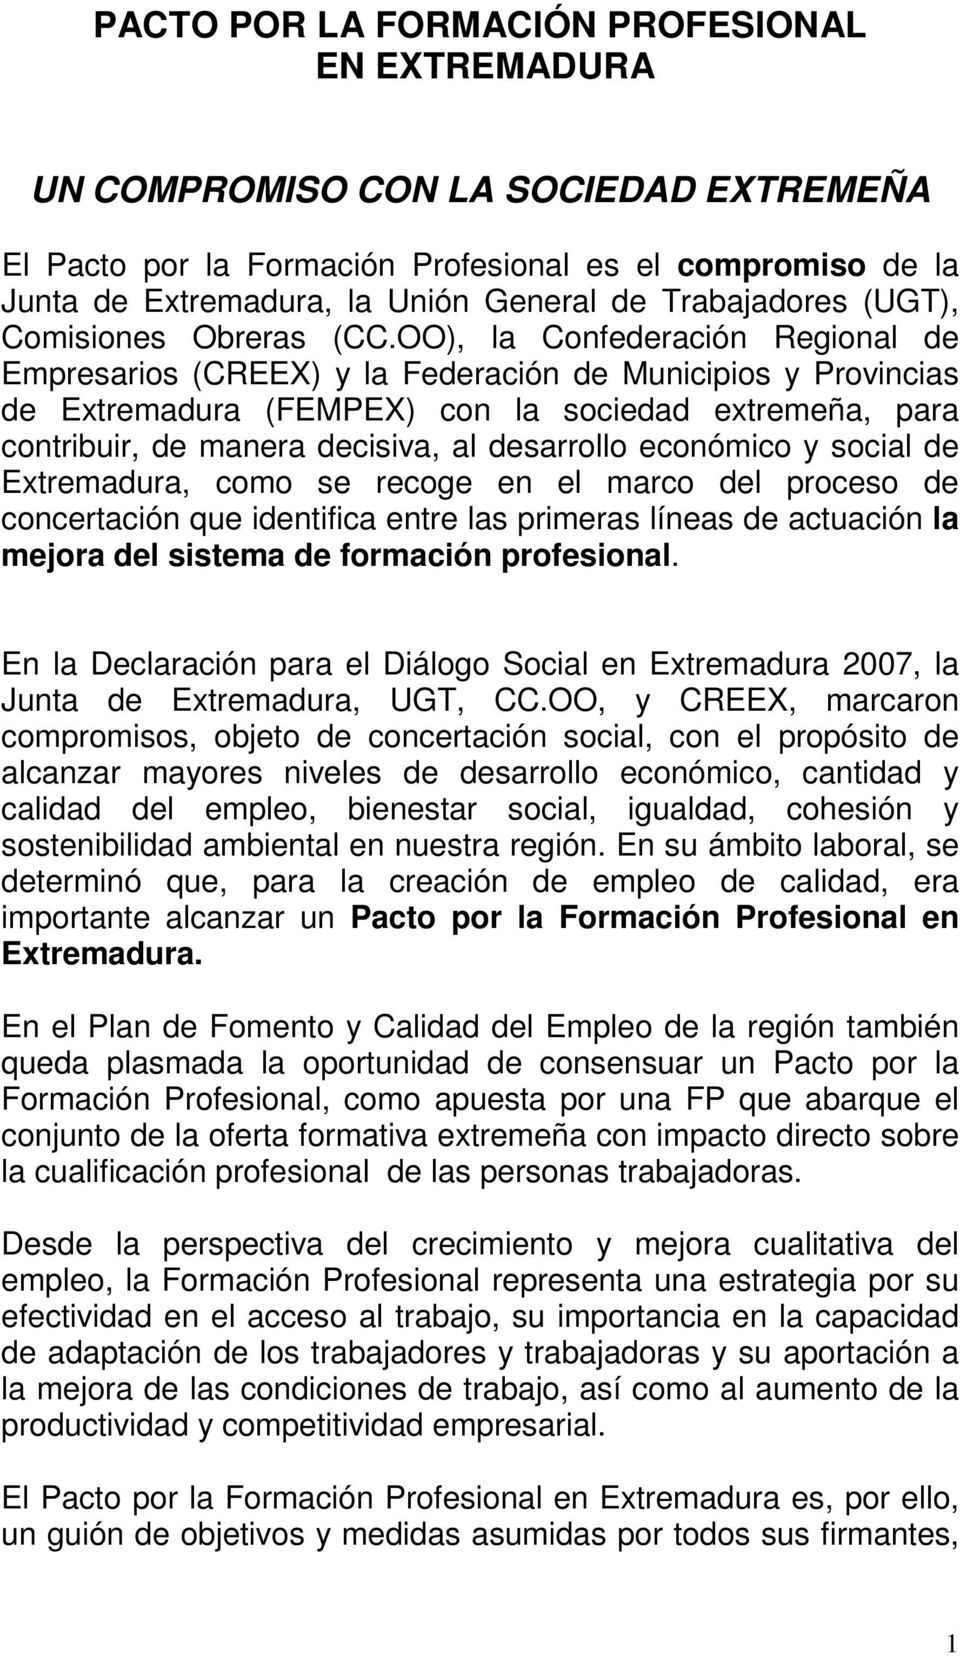 OO), la Confederación Regional de Empresarios (CREEX) y la Federación de Municipios y Provincias de Extremadura (FEMPEX) con la sociedad extremeña, para contribuir, de manera decisiva, al desarrollo